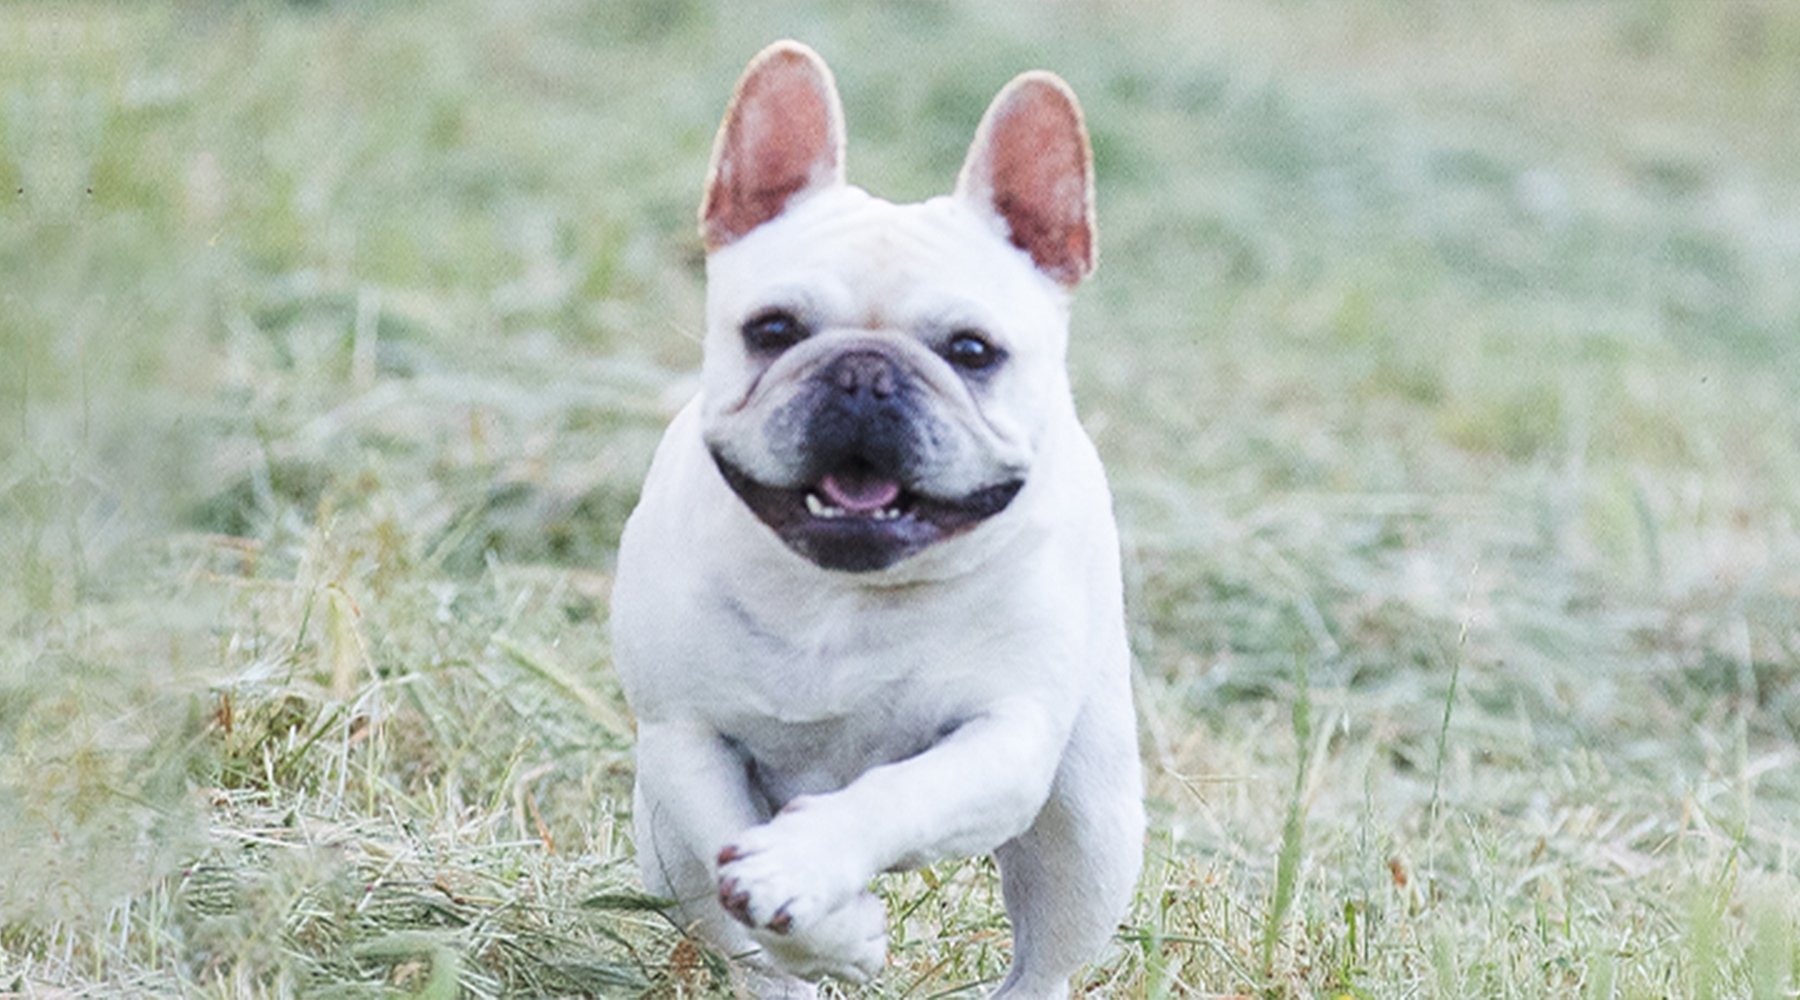 Bernie a small mixed breed dog runs toward the camera across a grassy field